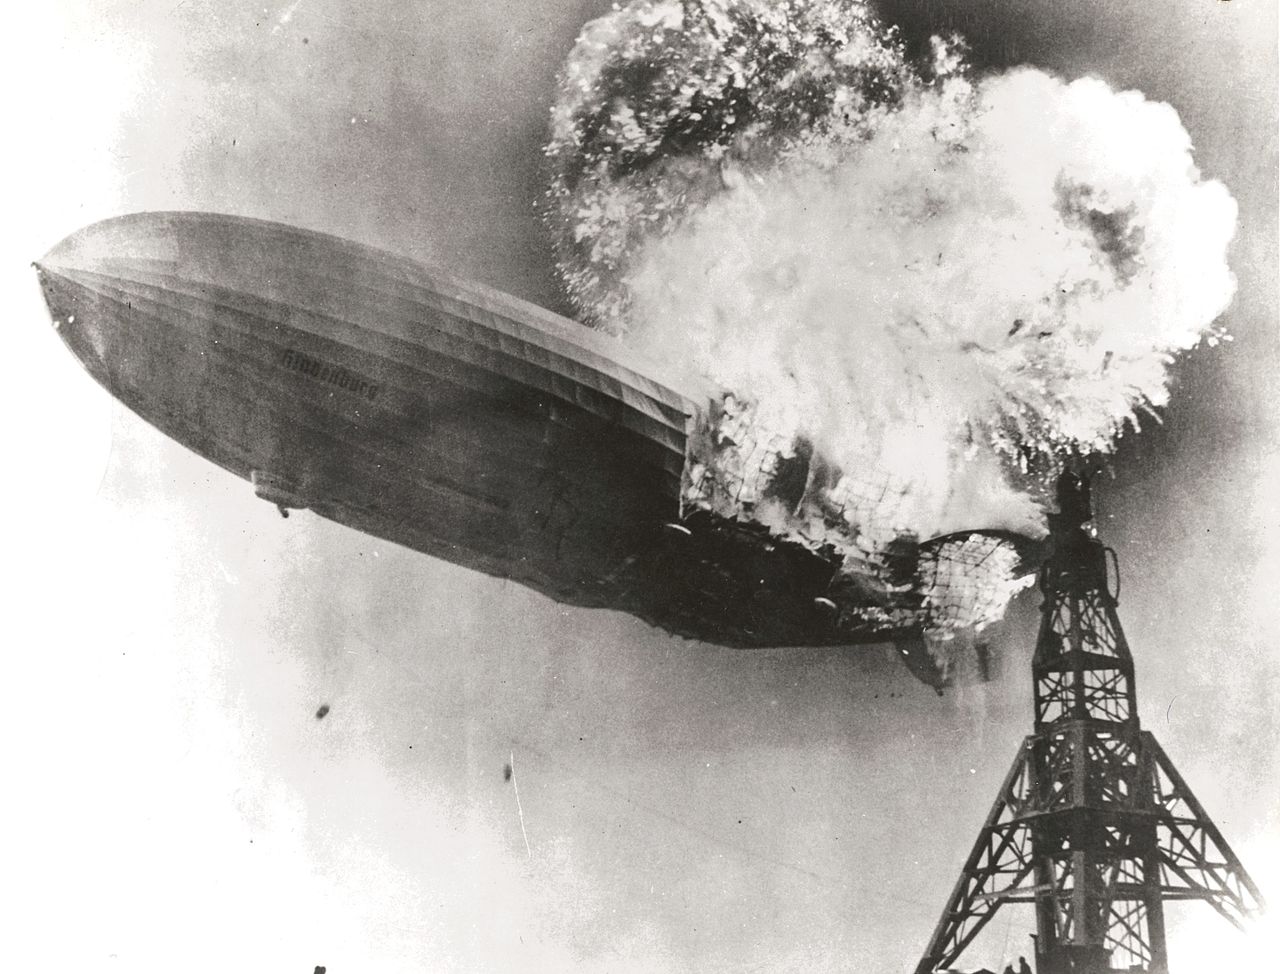 Hydrogengassen i «Hindenburg» eksploderer ved fortøyningsmasta i New Jersey i USA 6. mai 1937. 36 mennesker omkom. Tilliten til luftskip for passasjertrafikk ble knust og trafikken opphørte.